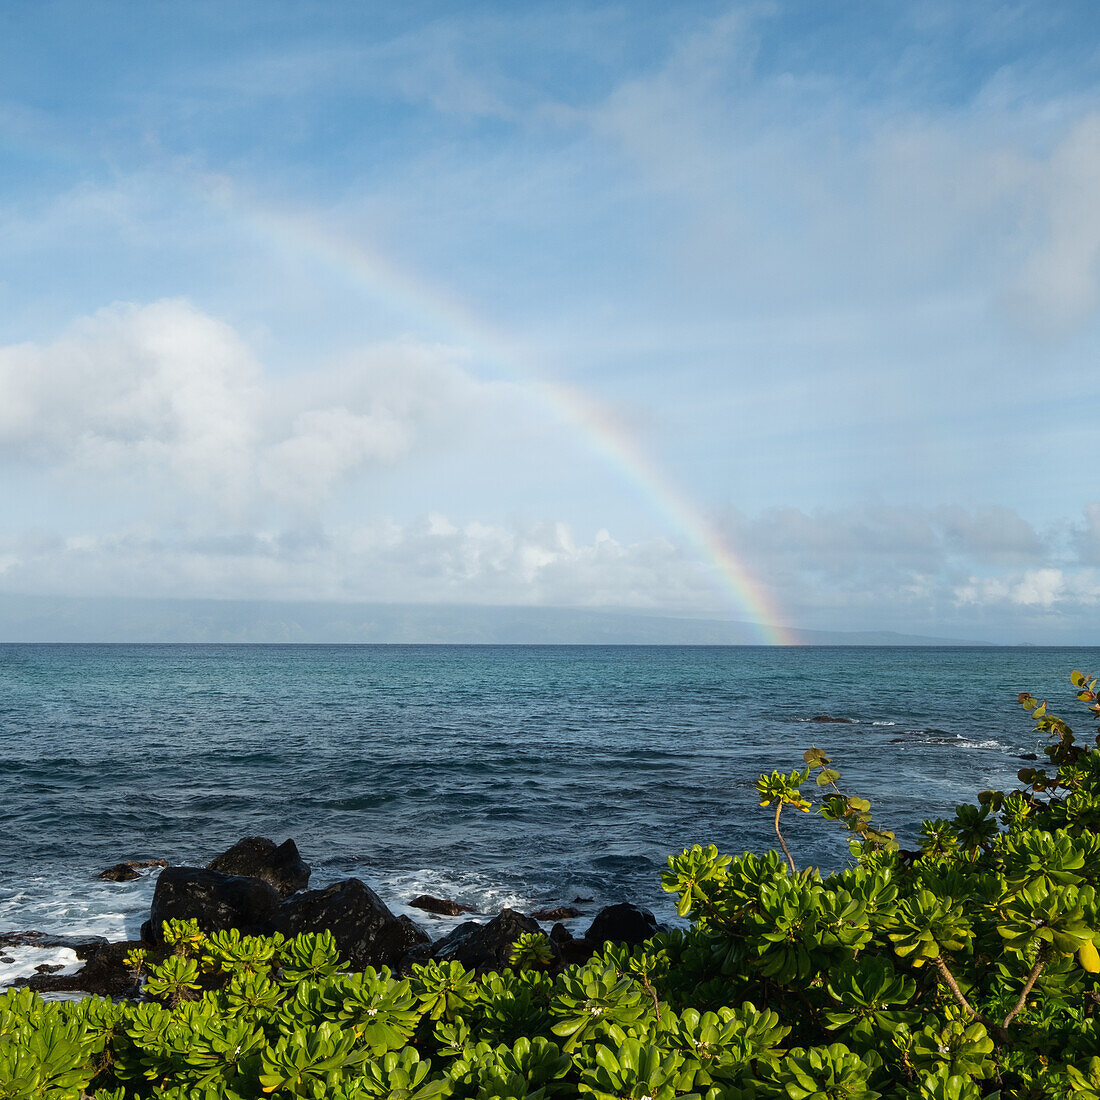 Vereinigte Staaten, Hawaii, Maui, Regenbogen am Meereshorizont